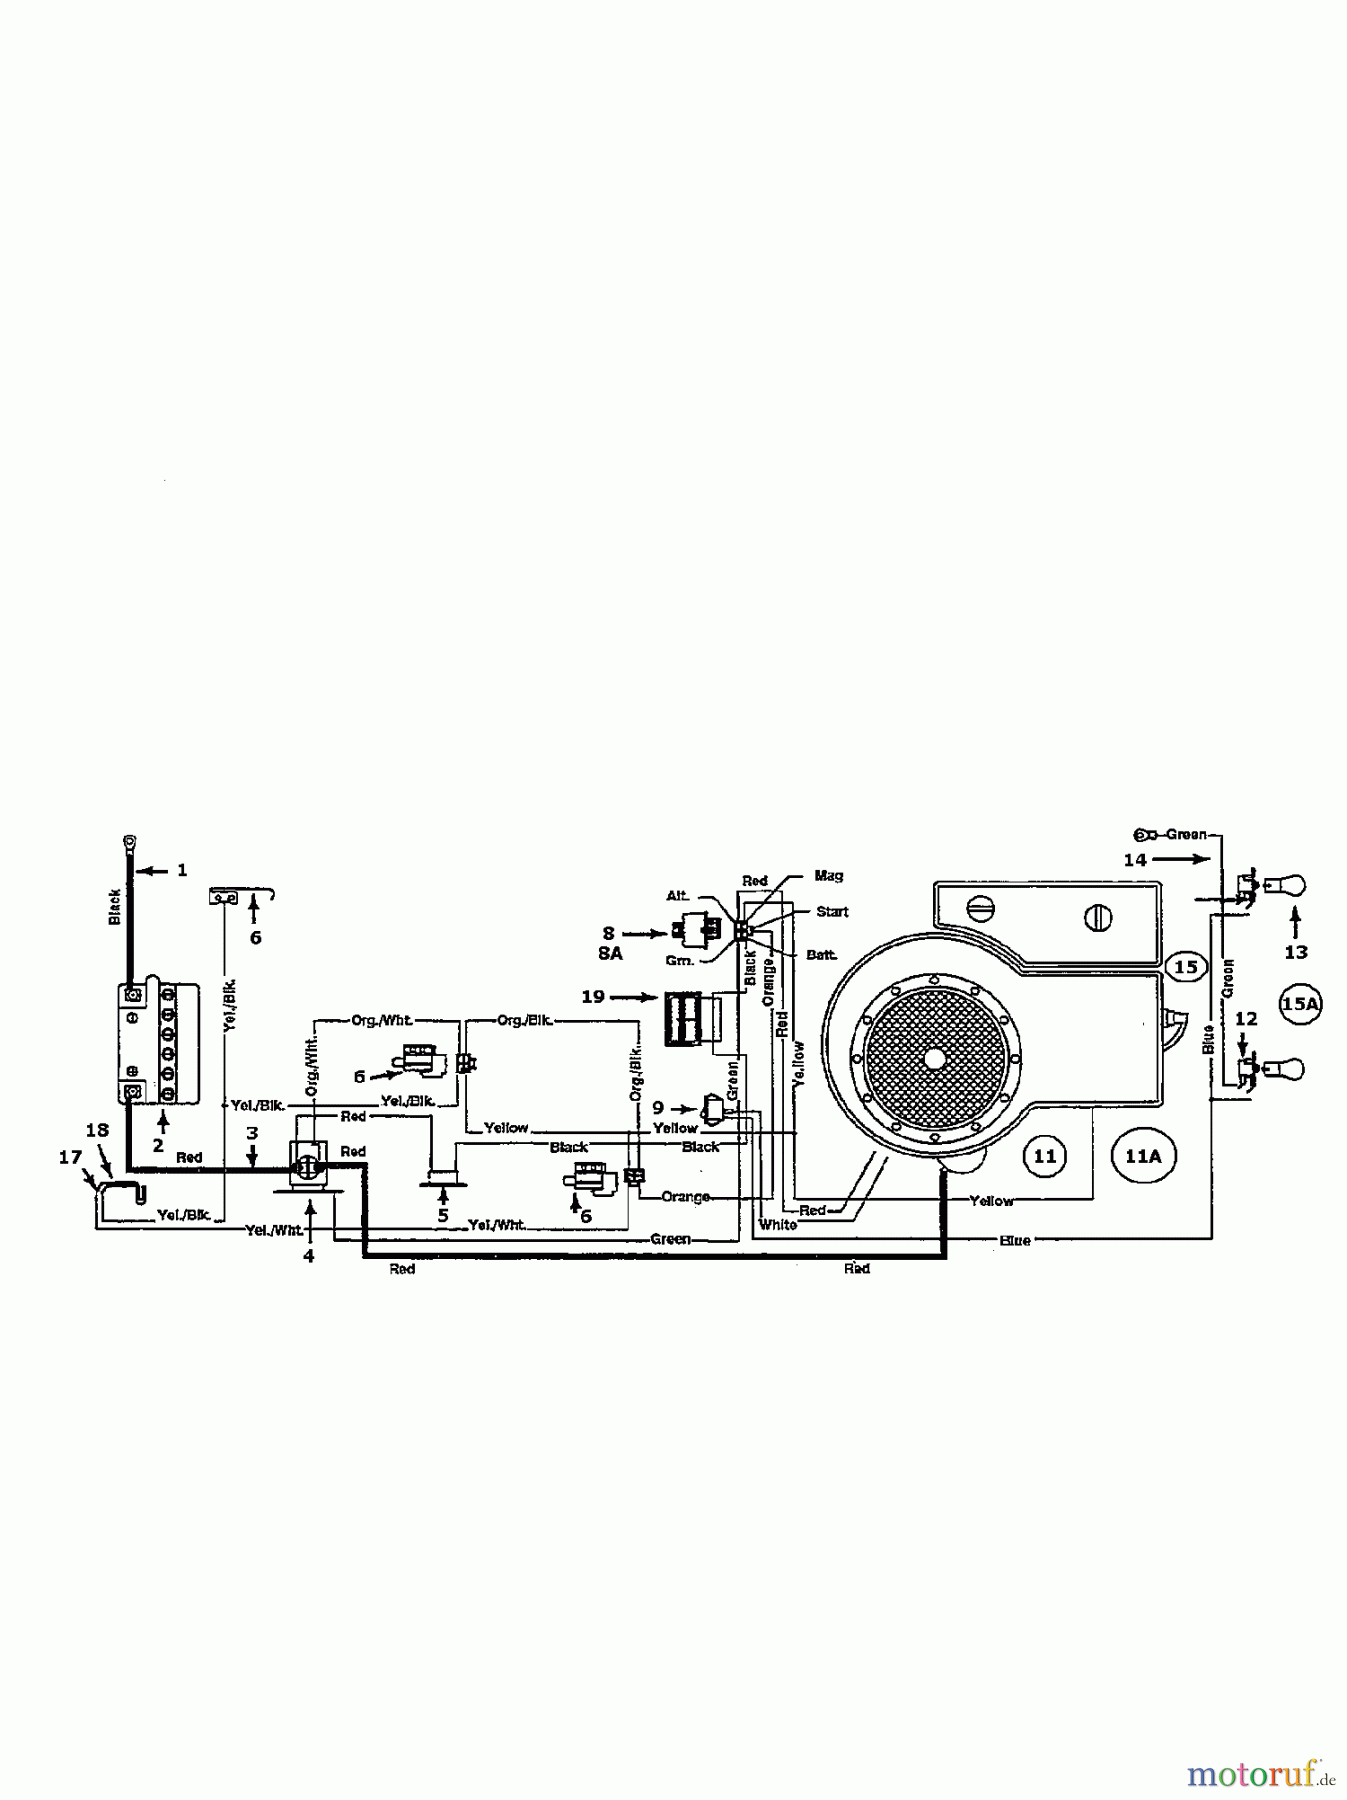  Gardol Tracteurs de pelouse 12/91 134I471E668  (1994) Plan électrique cylindre simple